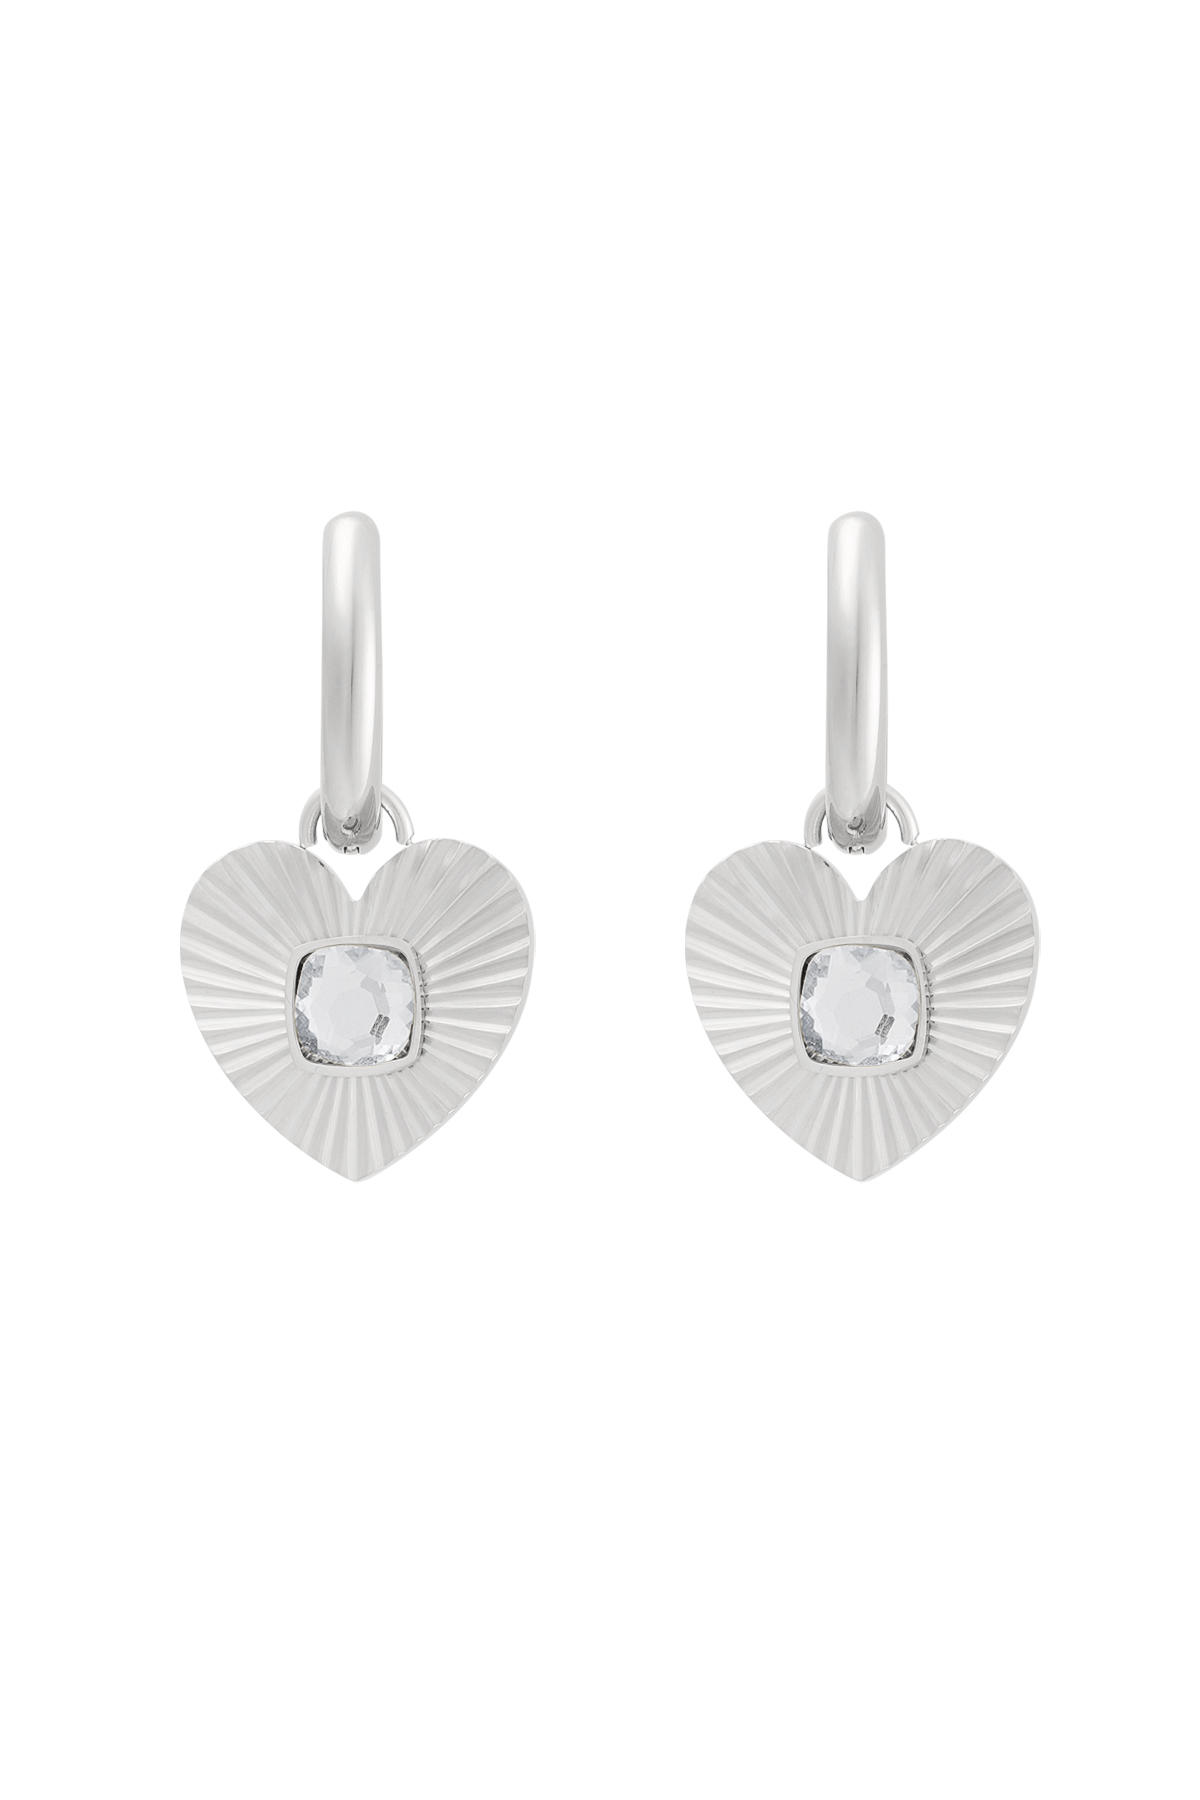 Boucles d'oreilles coeur avec pierre - argent/blanc h5 